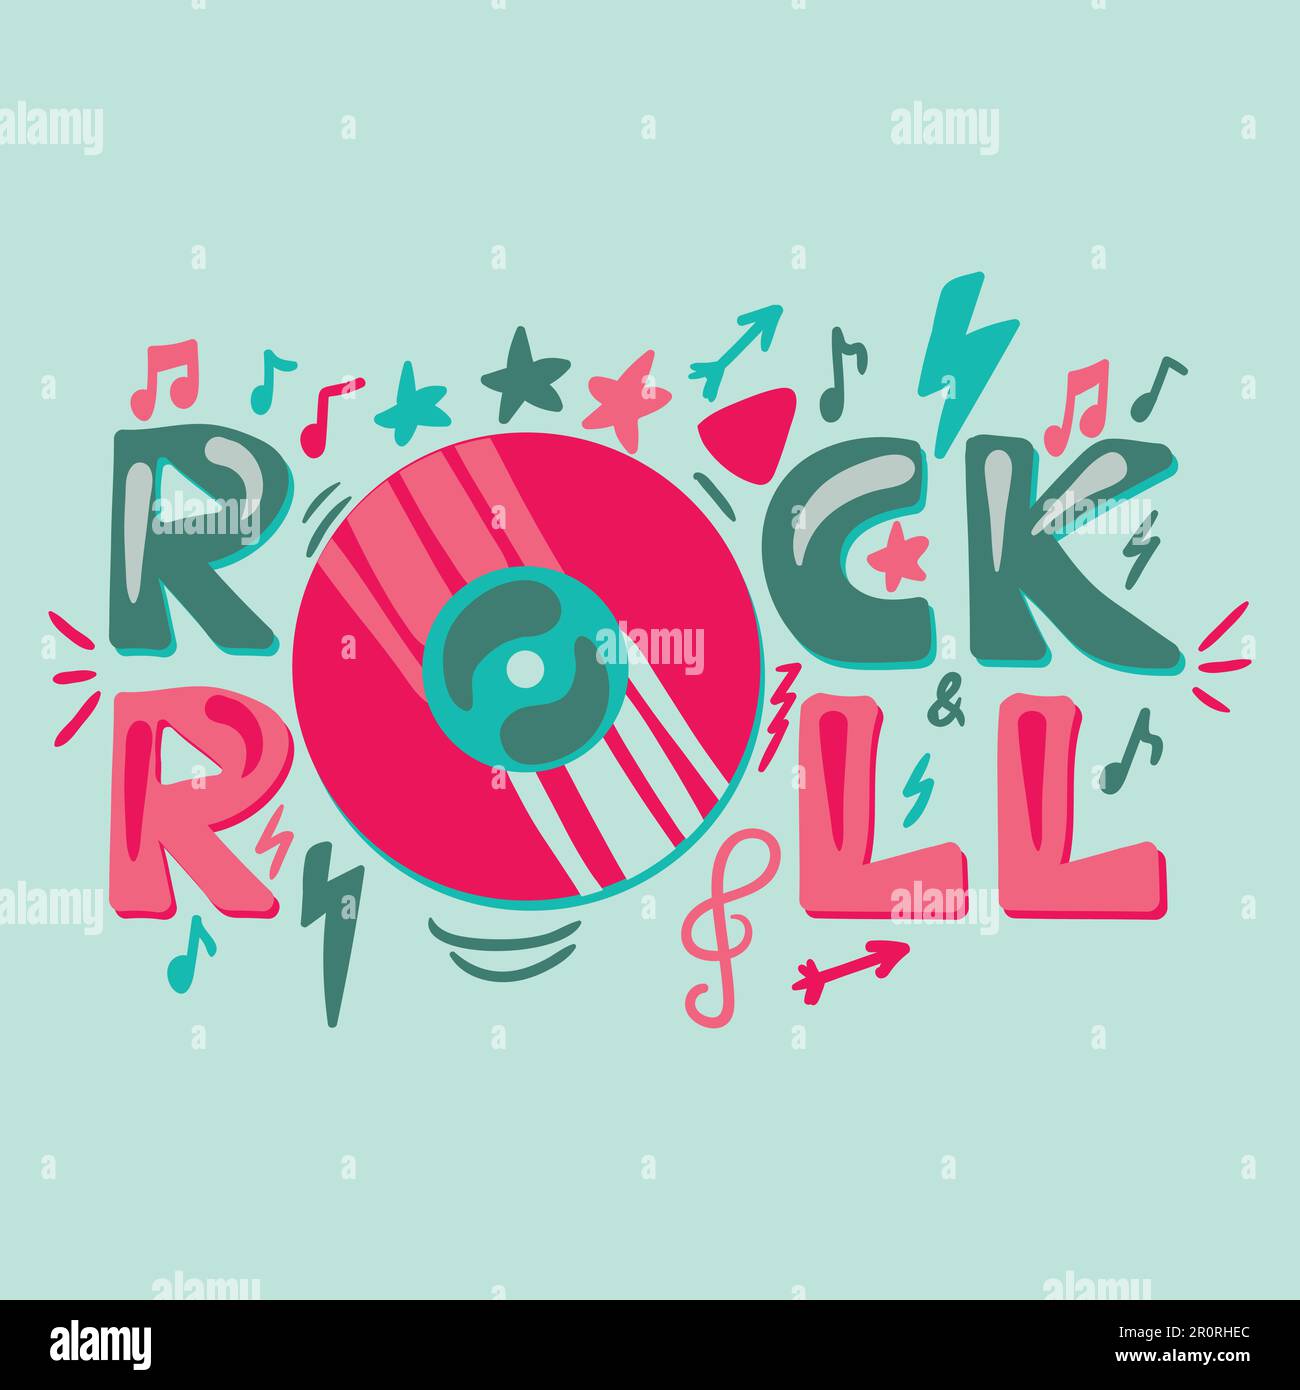 Rock N Roll von Hand gezeichnete Vektordarstellung. Disco-Schriftzug. Poster für ein Konzert im Retro-Stil, Banneridee Stock Vektor